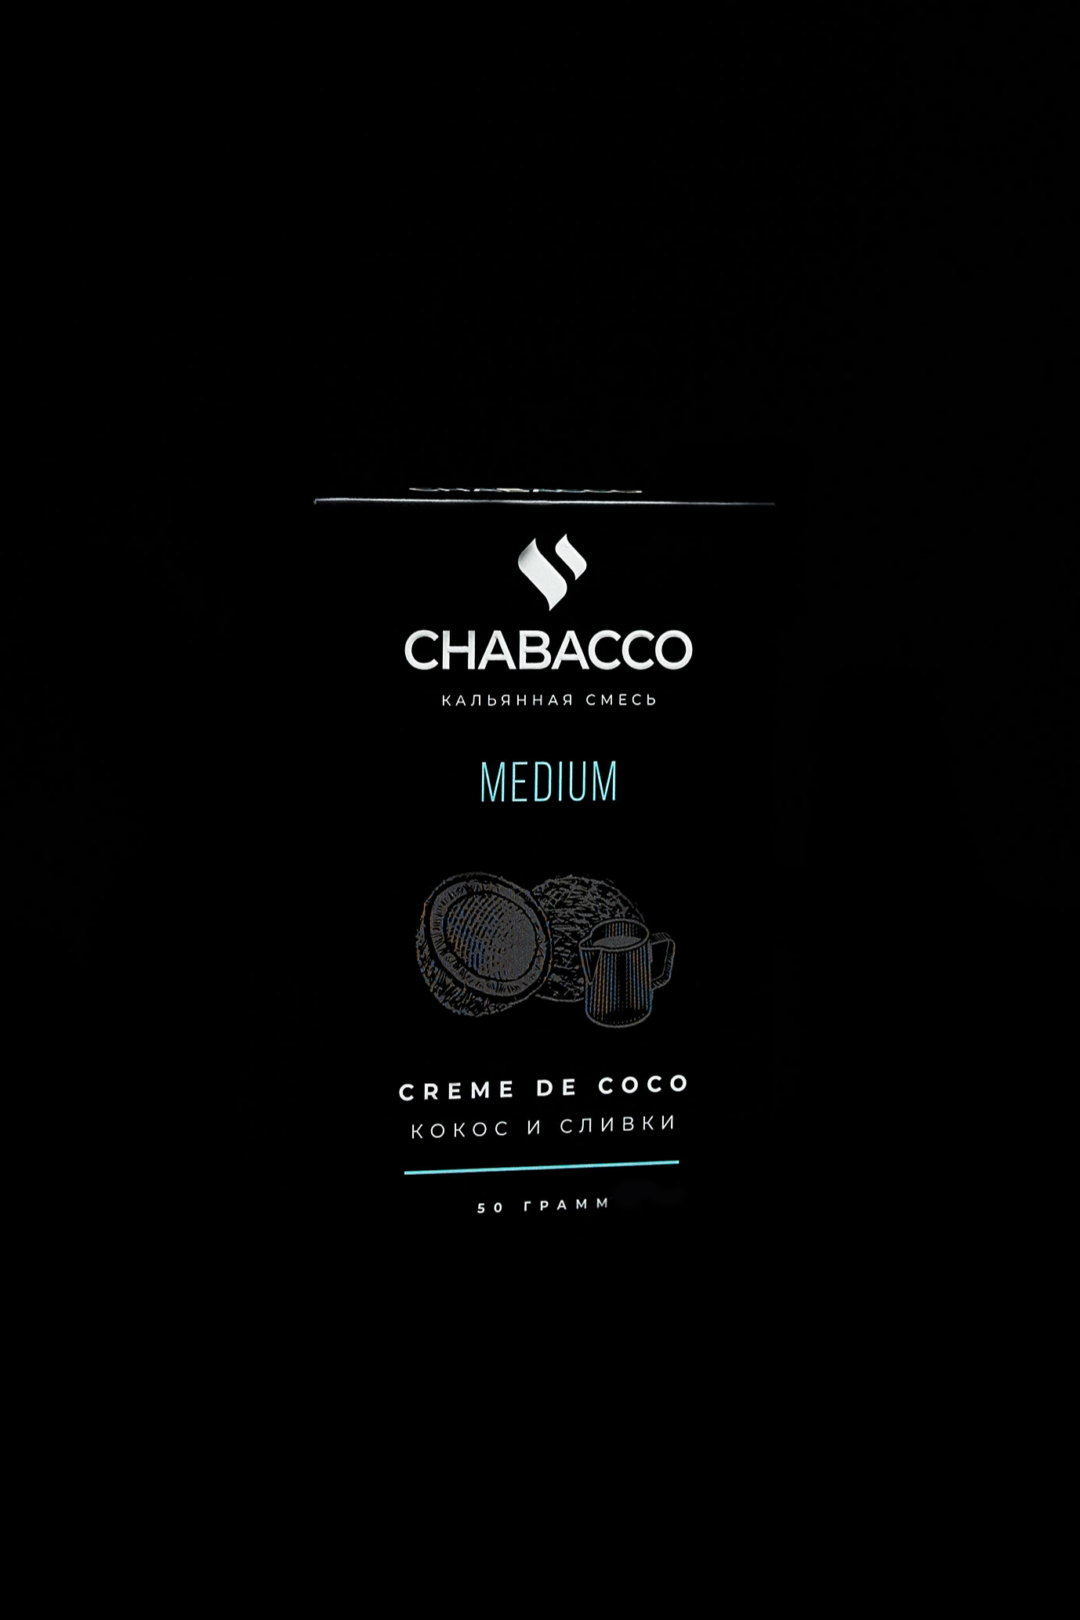 Chabacco Medium CREME DE COCO ( Kokos, dondurma )